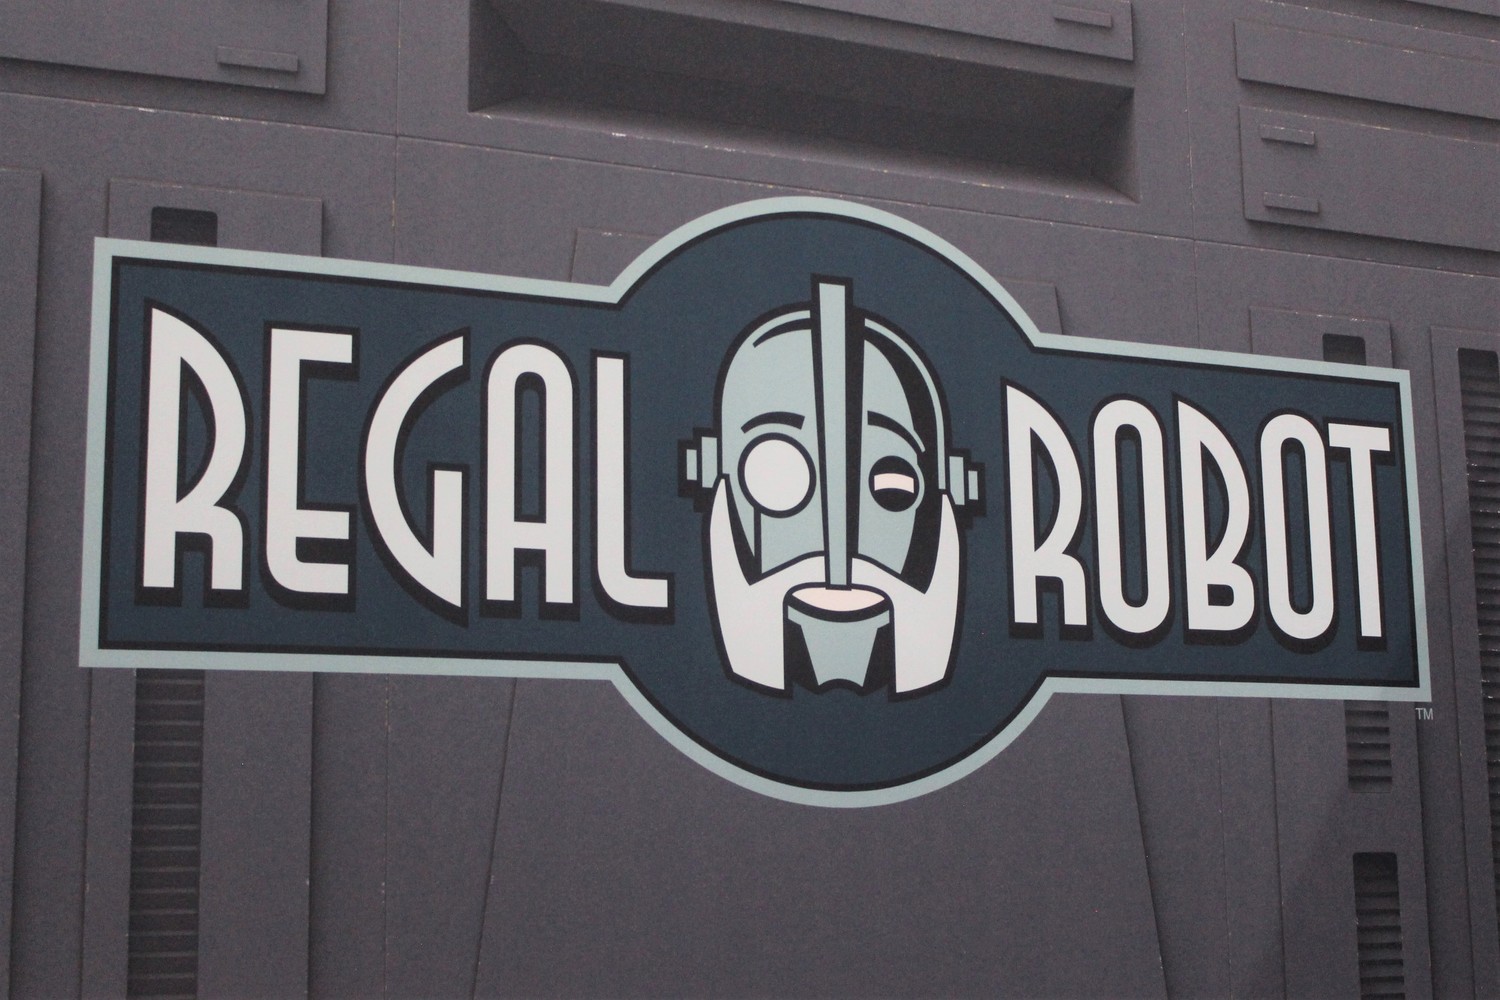 regal-robot-001.jpg